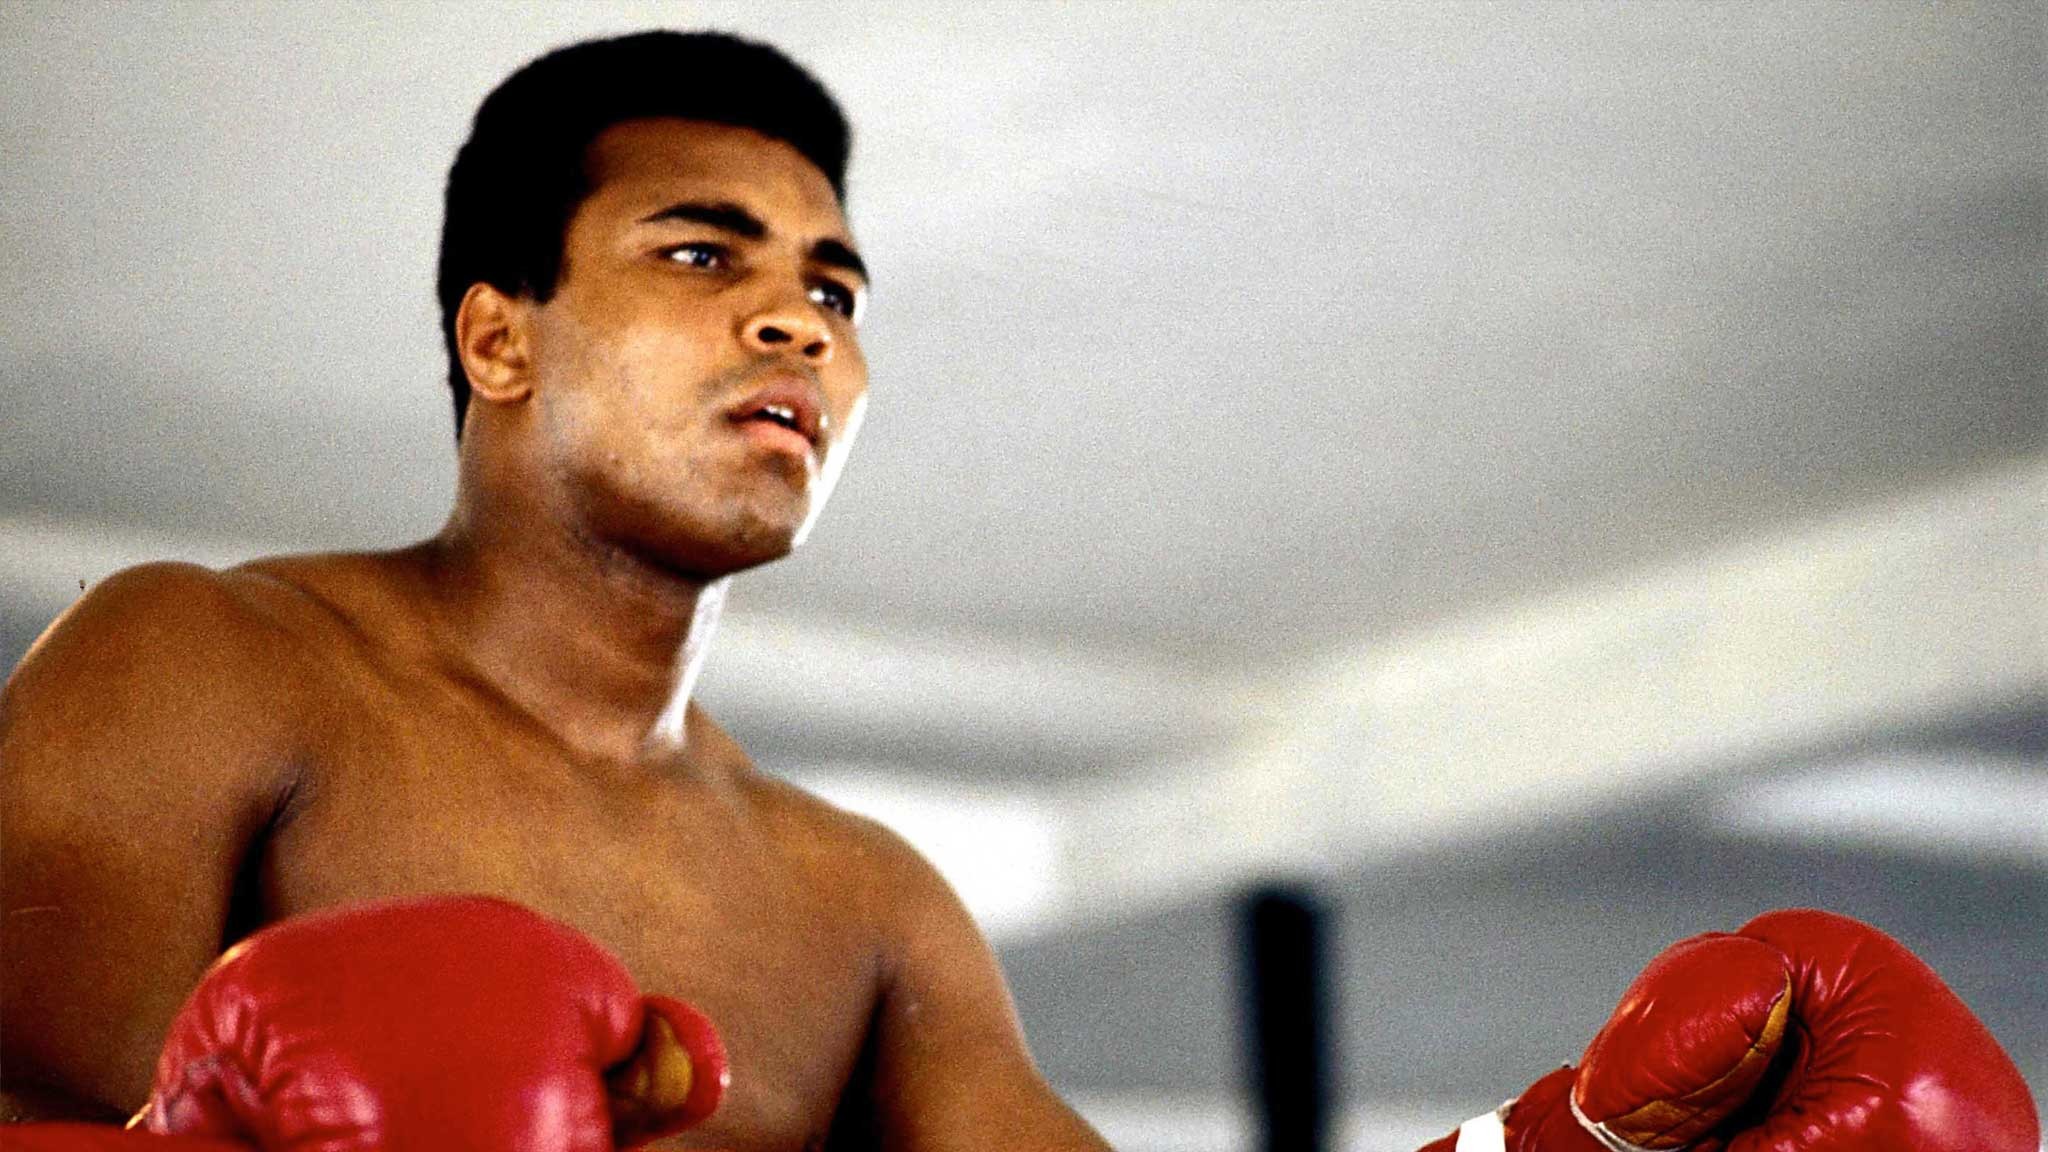 Muhammad Ali Sky zeigt das Leben einer Legende als Doku